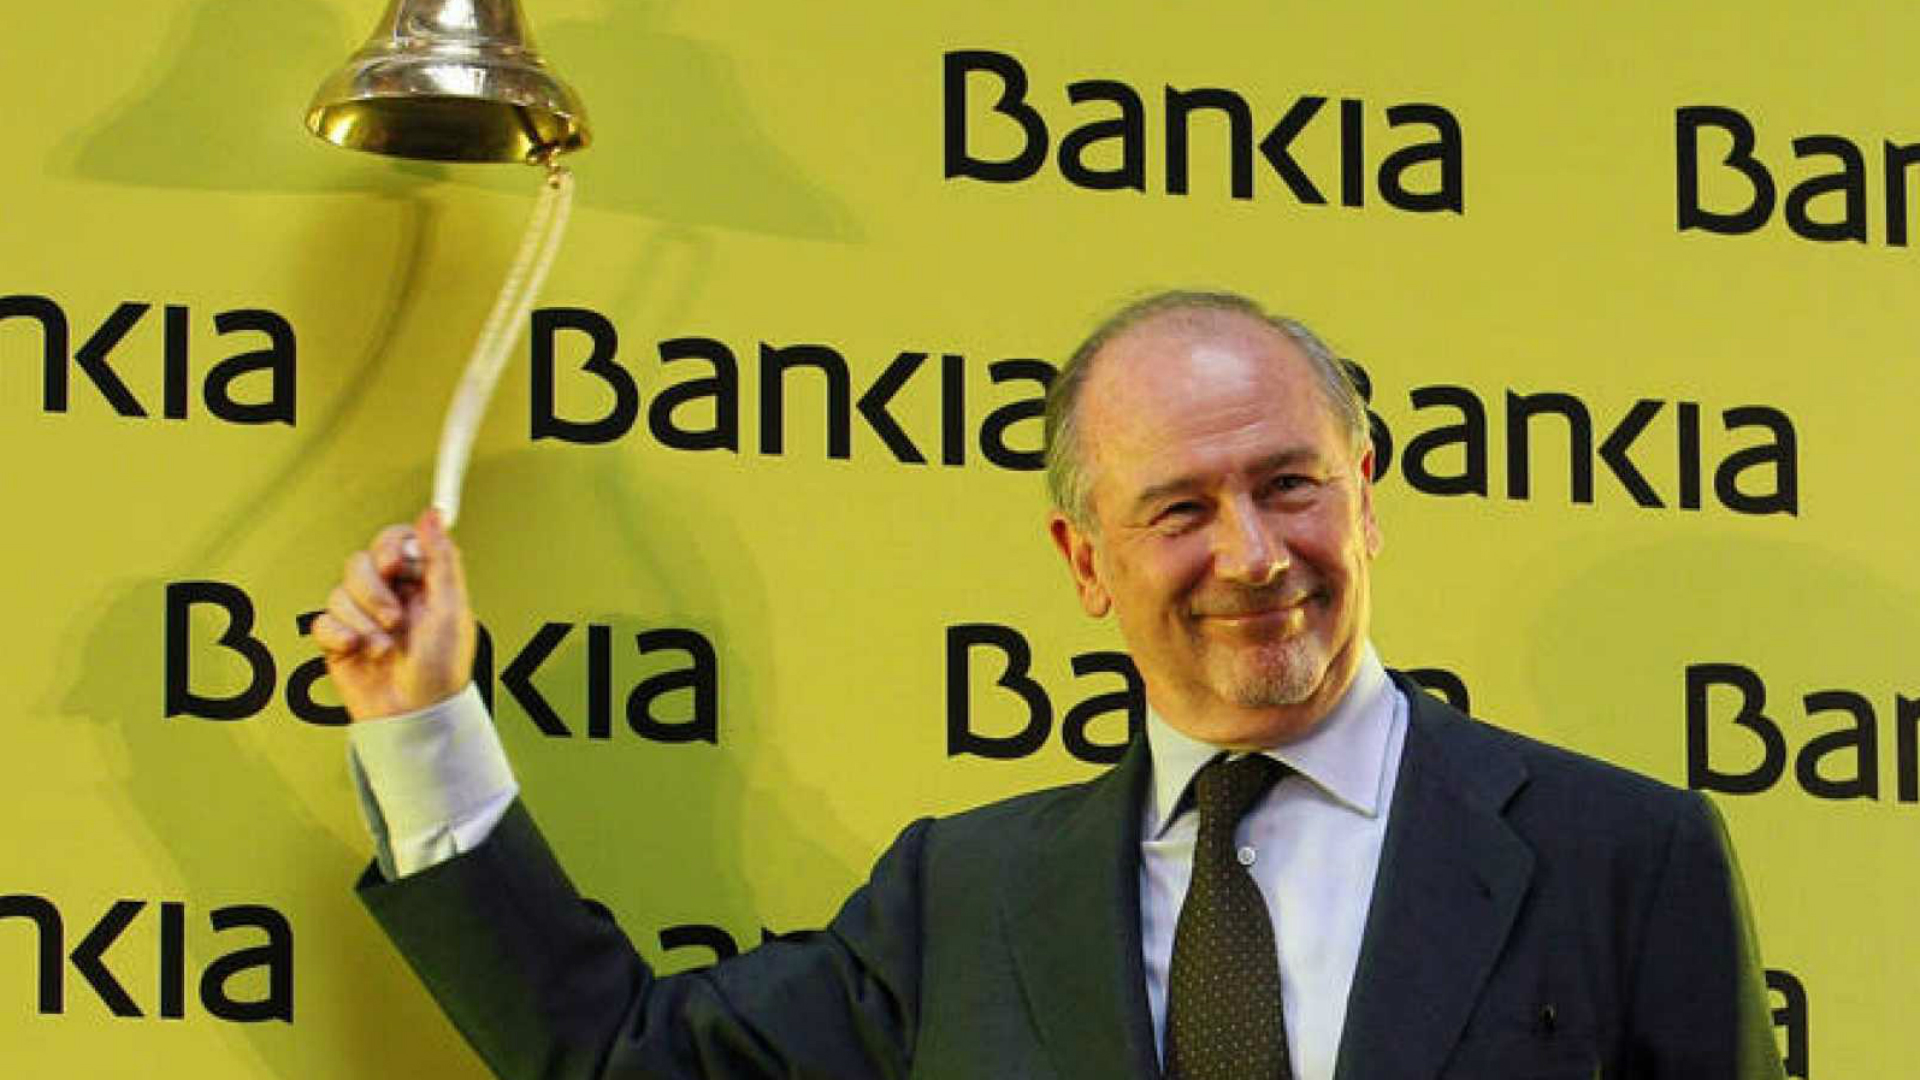 Ir al Video La Audiencia Nacional absuelve a Rato y al resto de acusados por la salida a Bolsa de Bankia